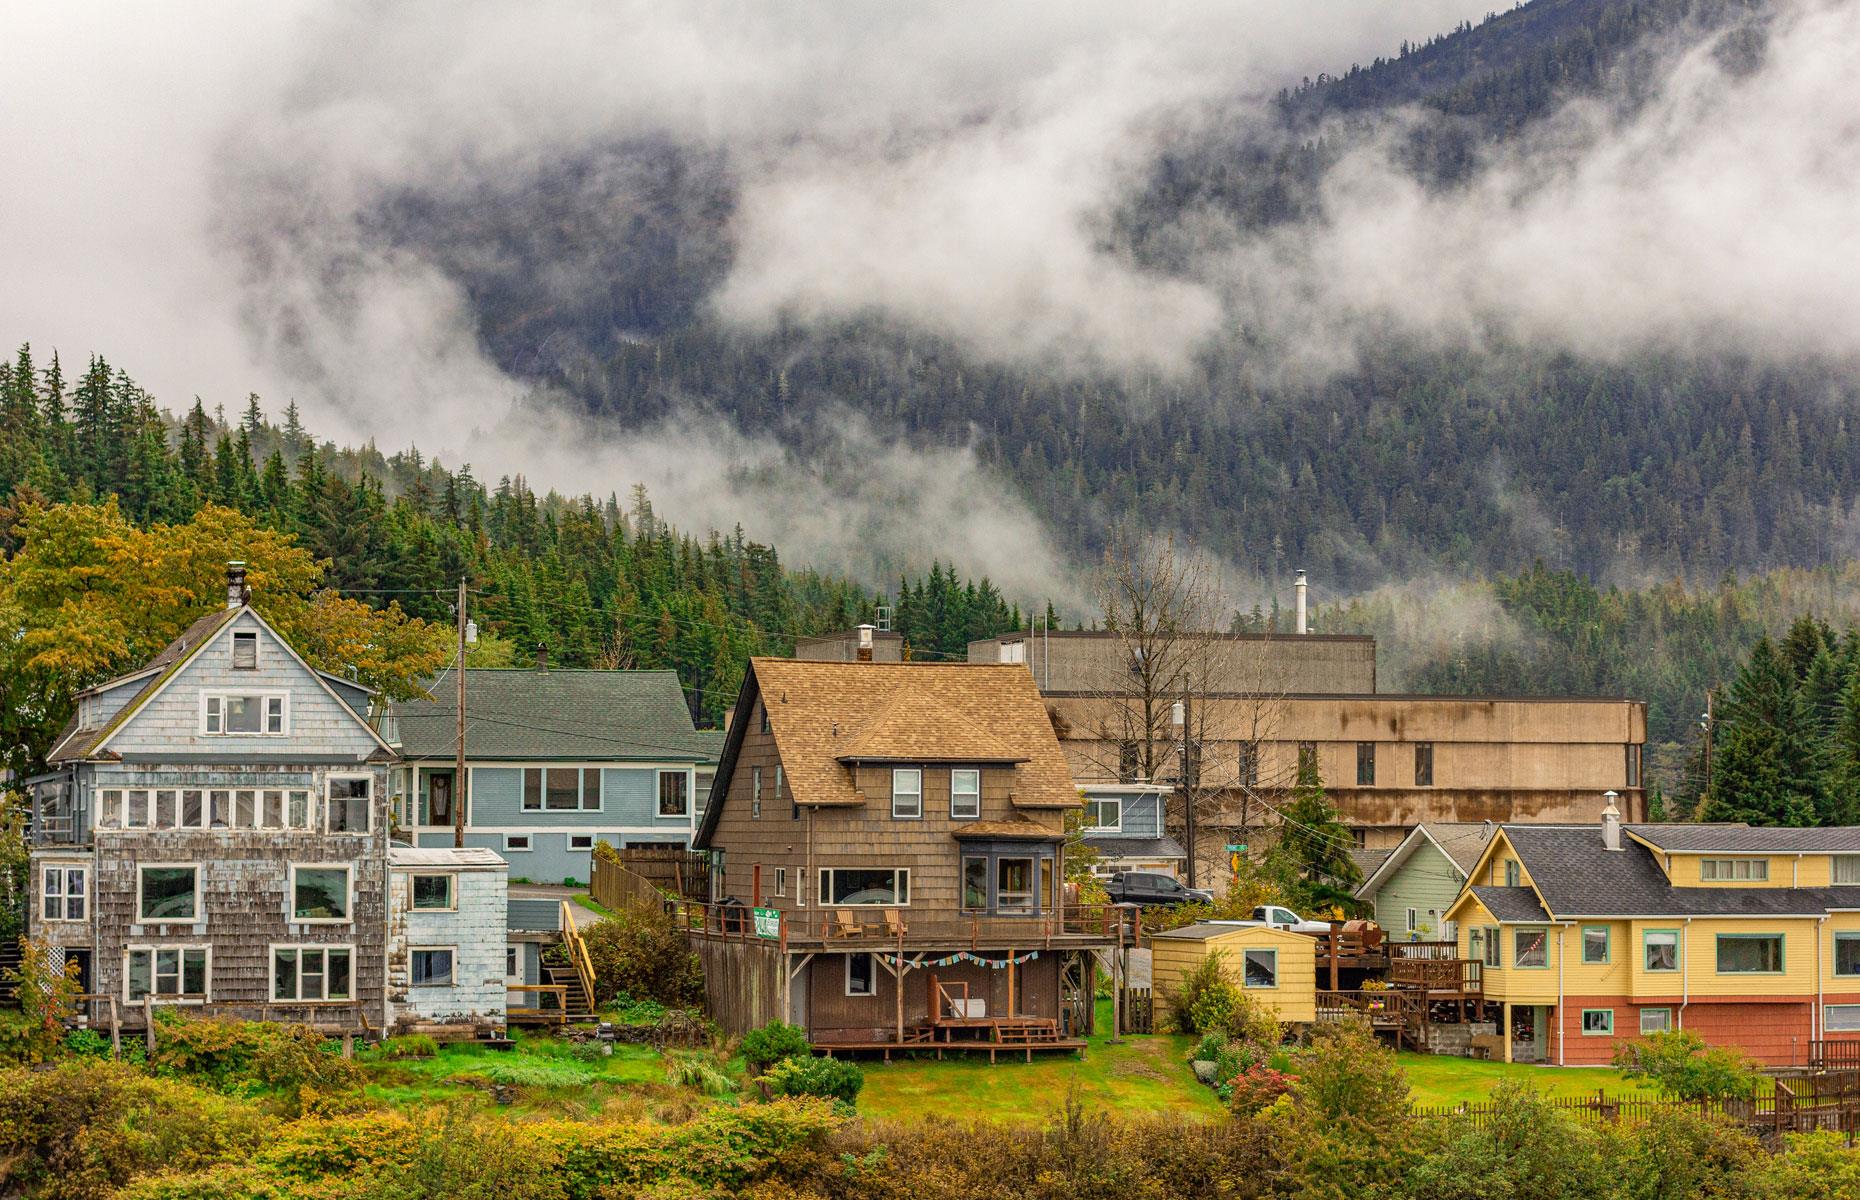 Most tax-friendly: Alaska